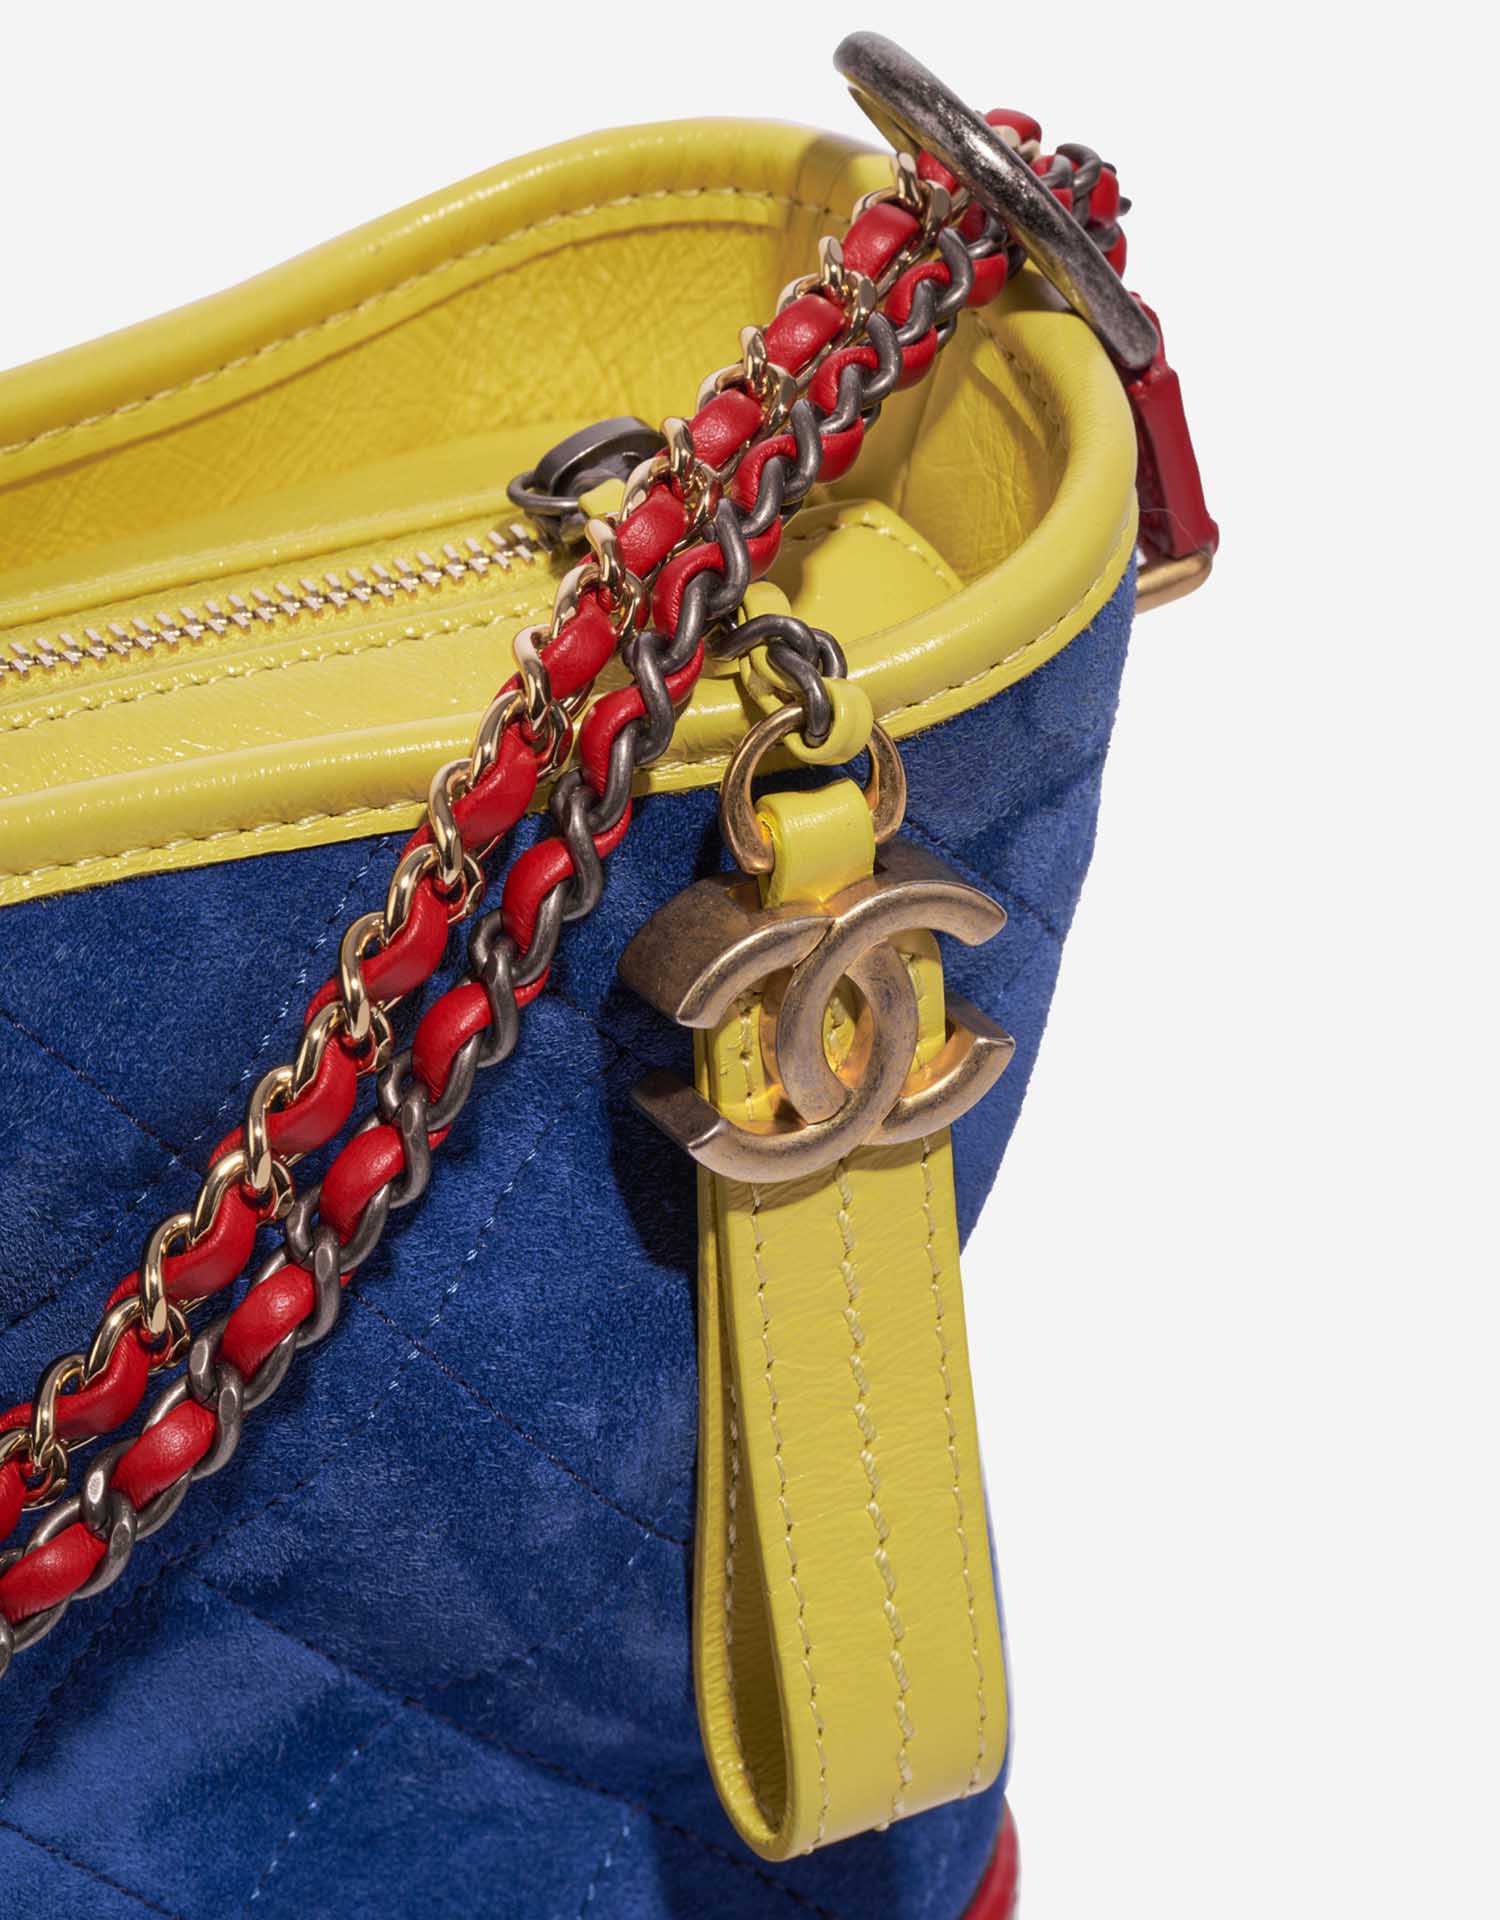 Gebrauchte Chanel Tasche Gabrielle Medium Kalbsleder / Wildleder Blau / Rot / Gelb Blau, Multicolour Verschluss-System | Verkaufen Sie Ihre Designer-Tasche auf Saclab.com